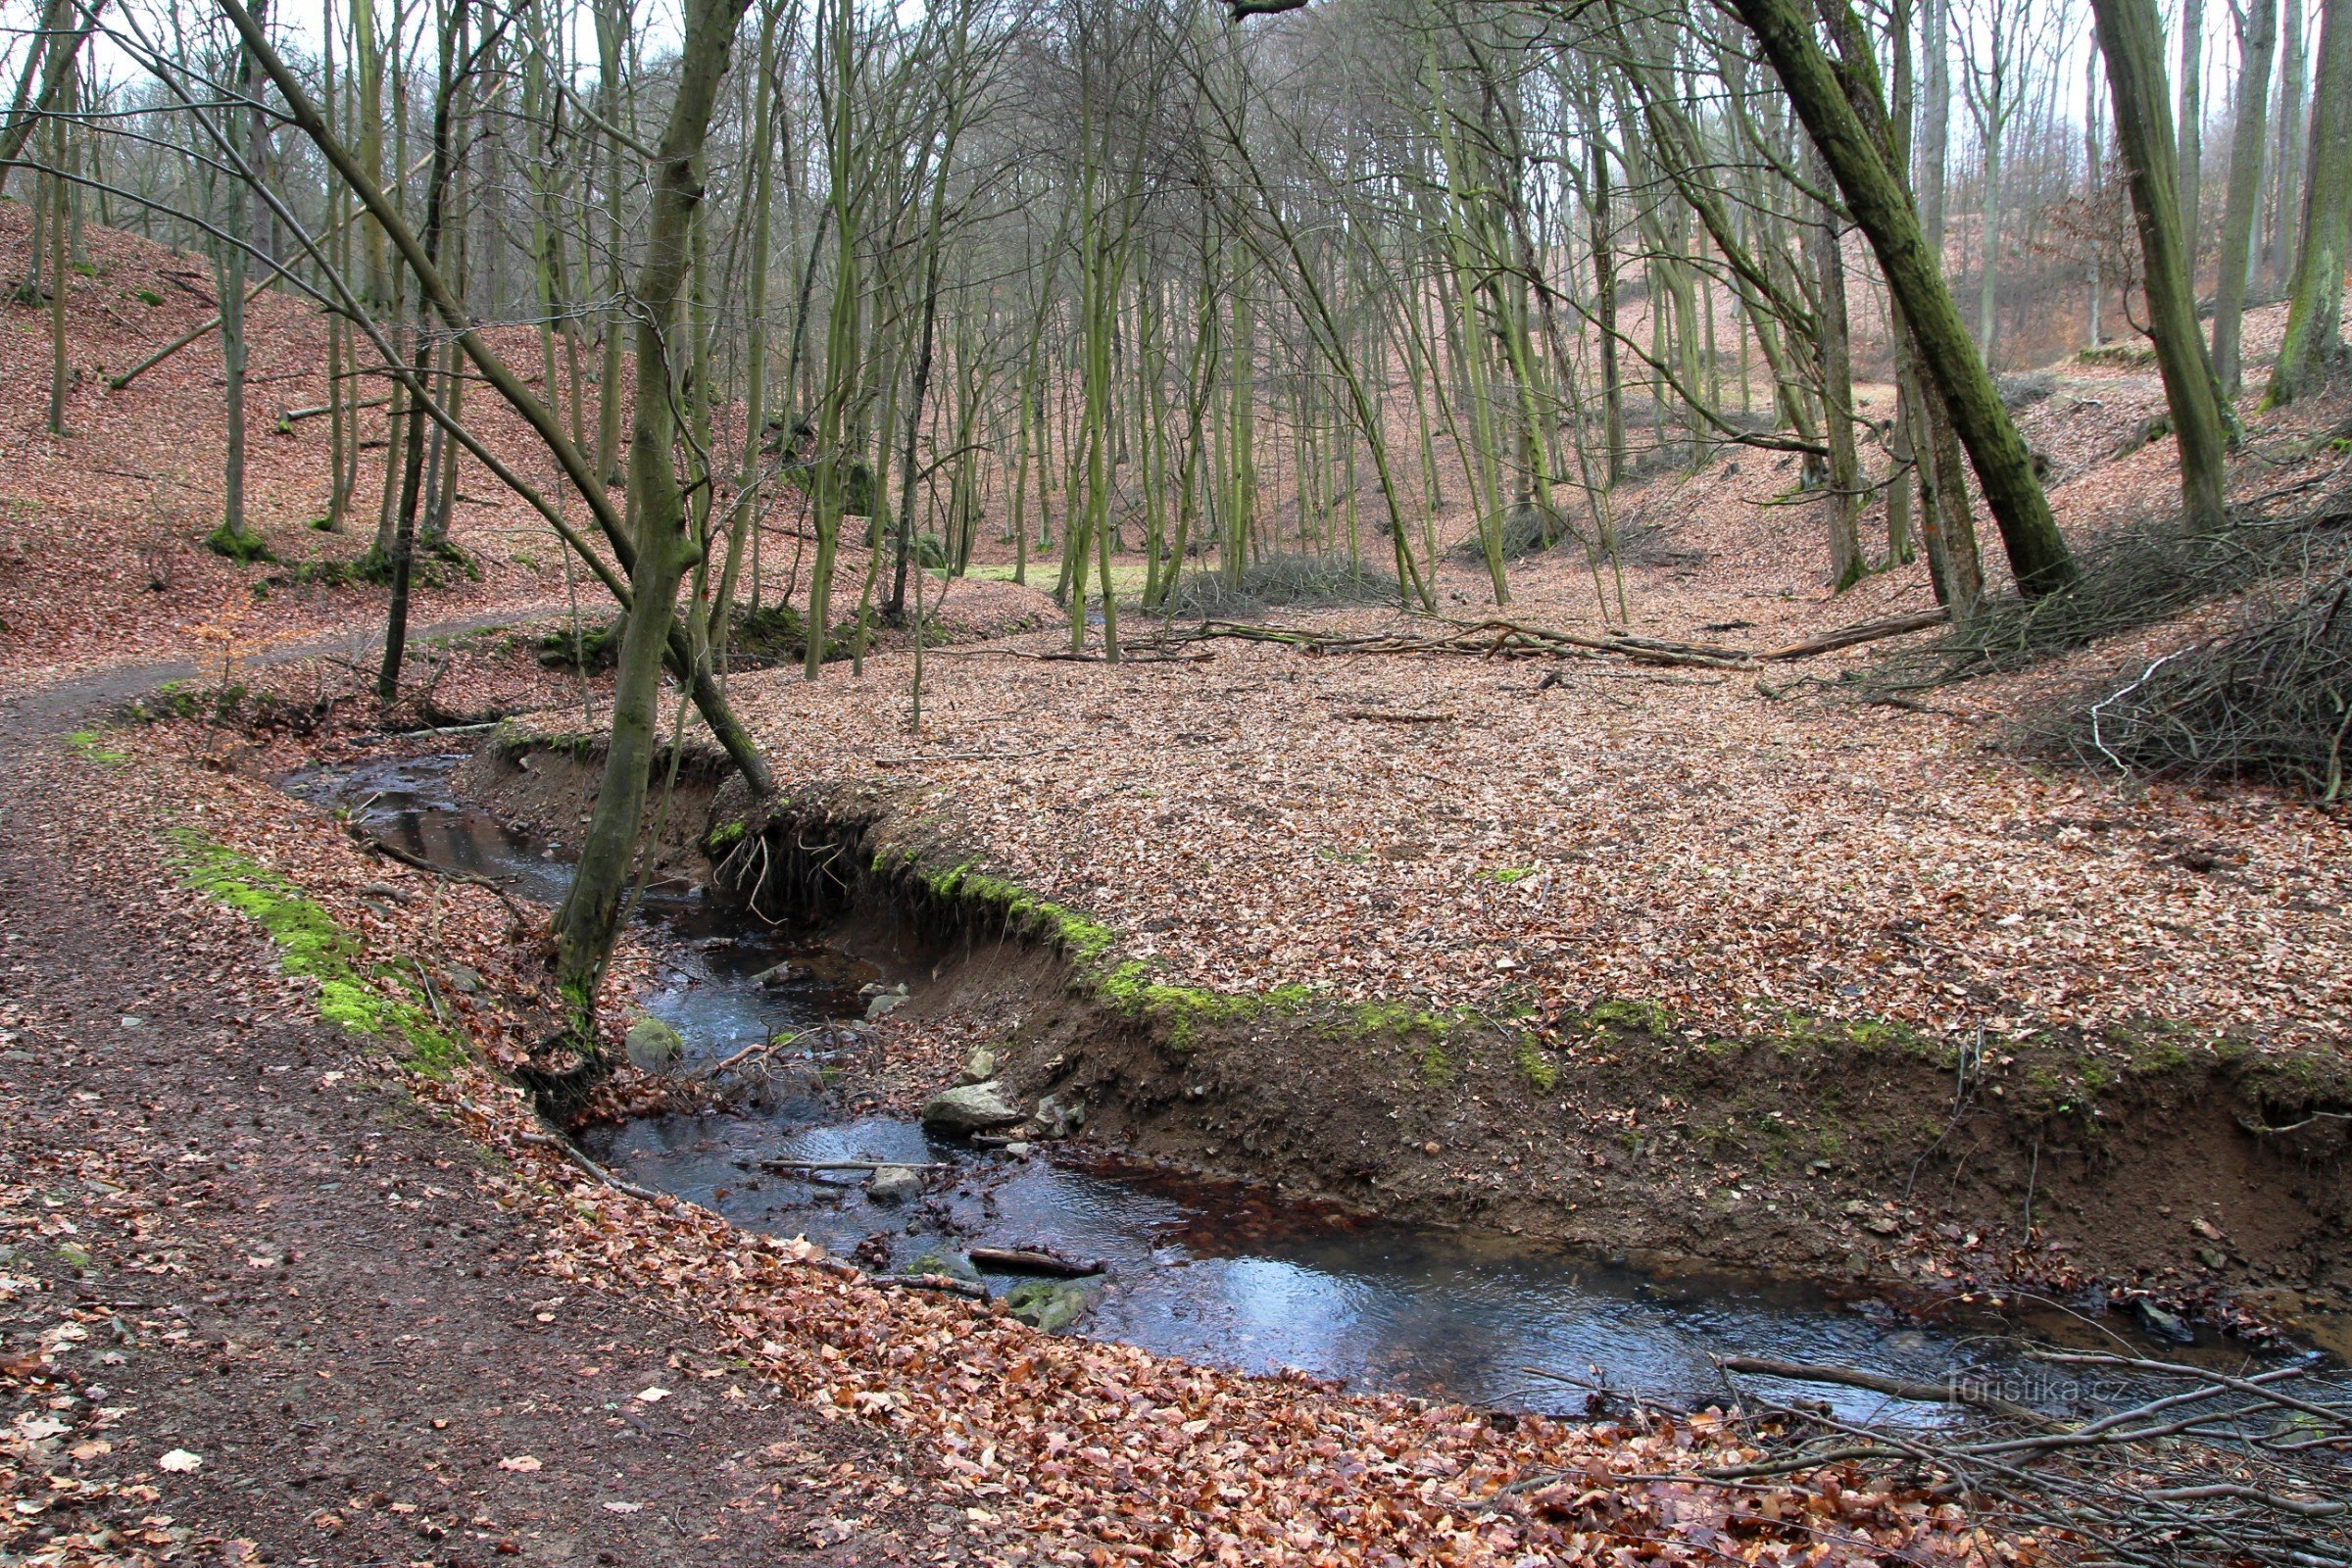 The meandering flow of Augšperské brook